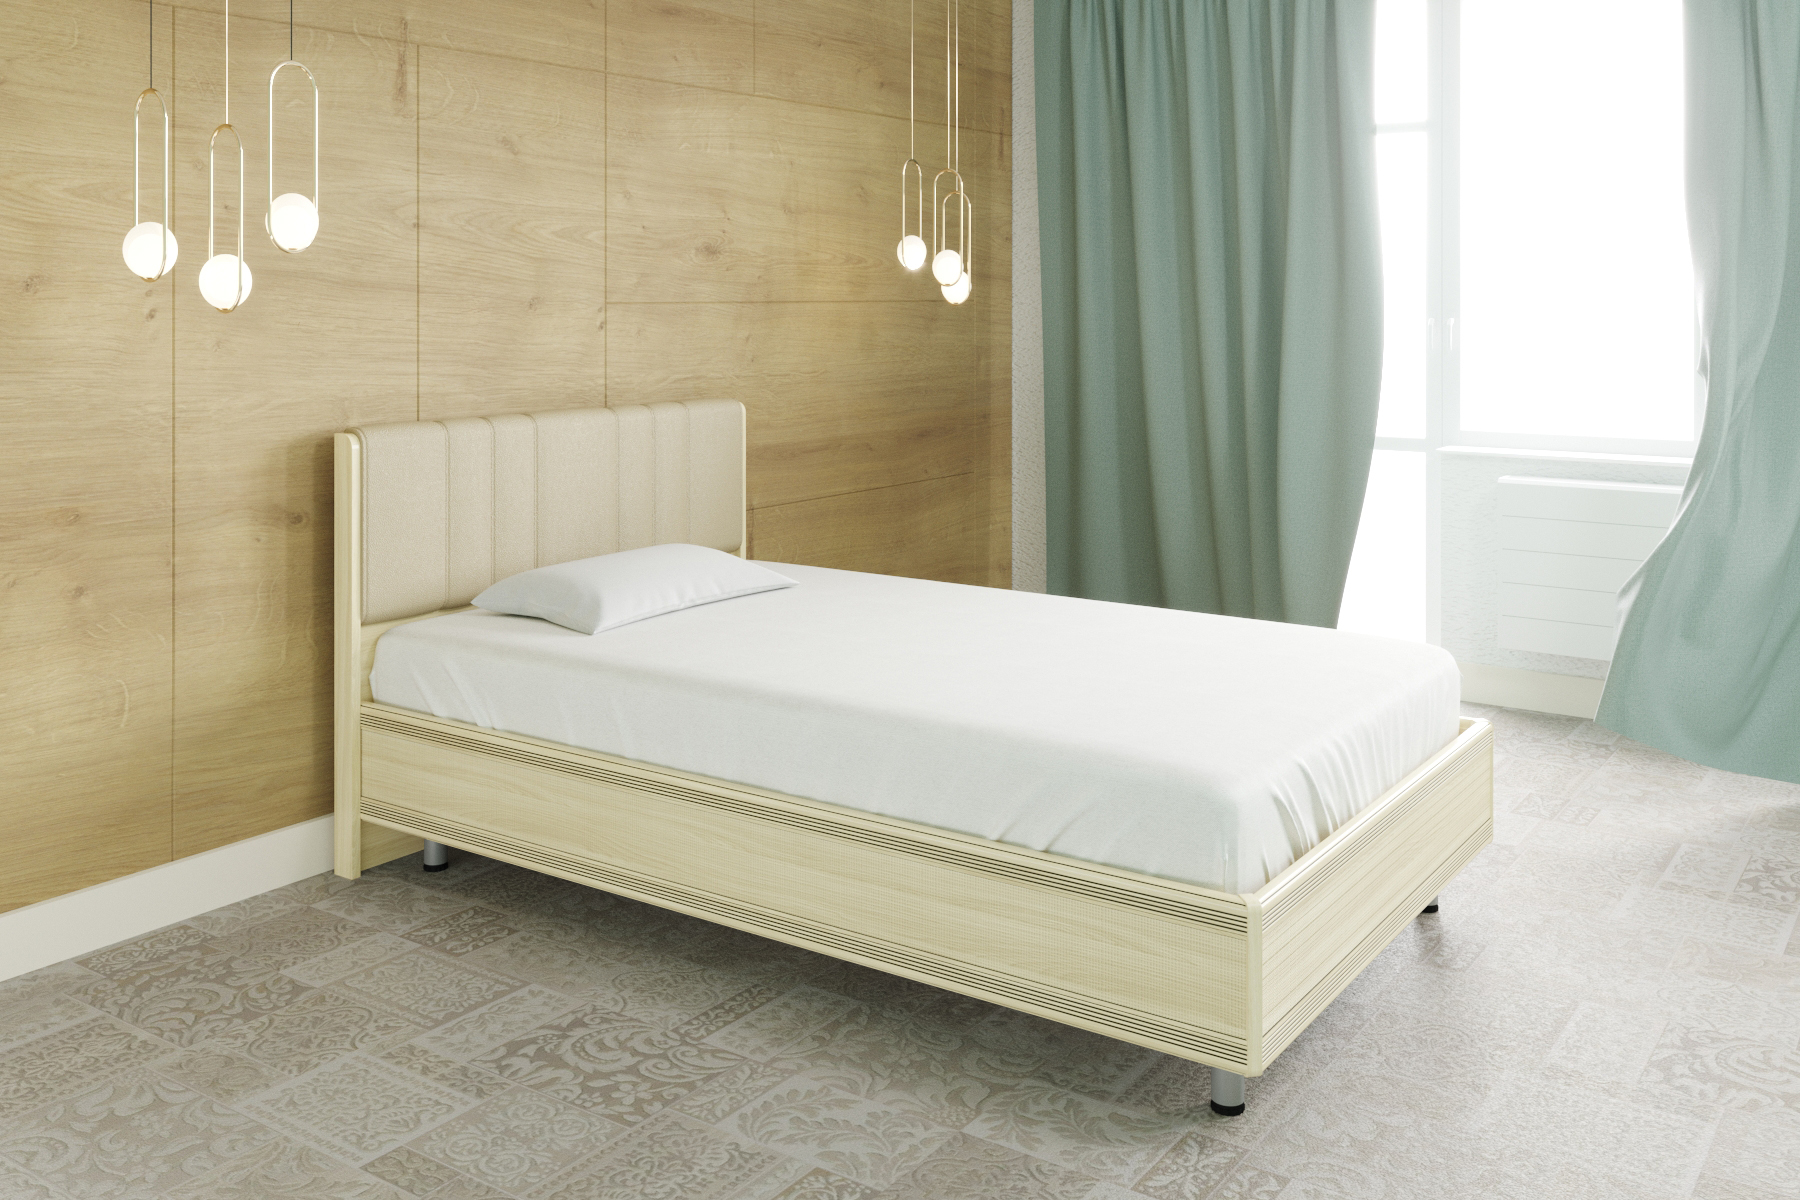 Односпальная кровать (1,2x2,0) КР-2011 – изображение 1